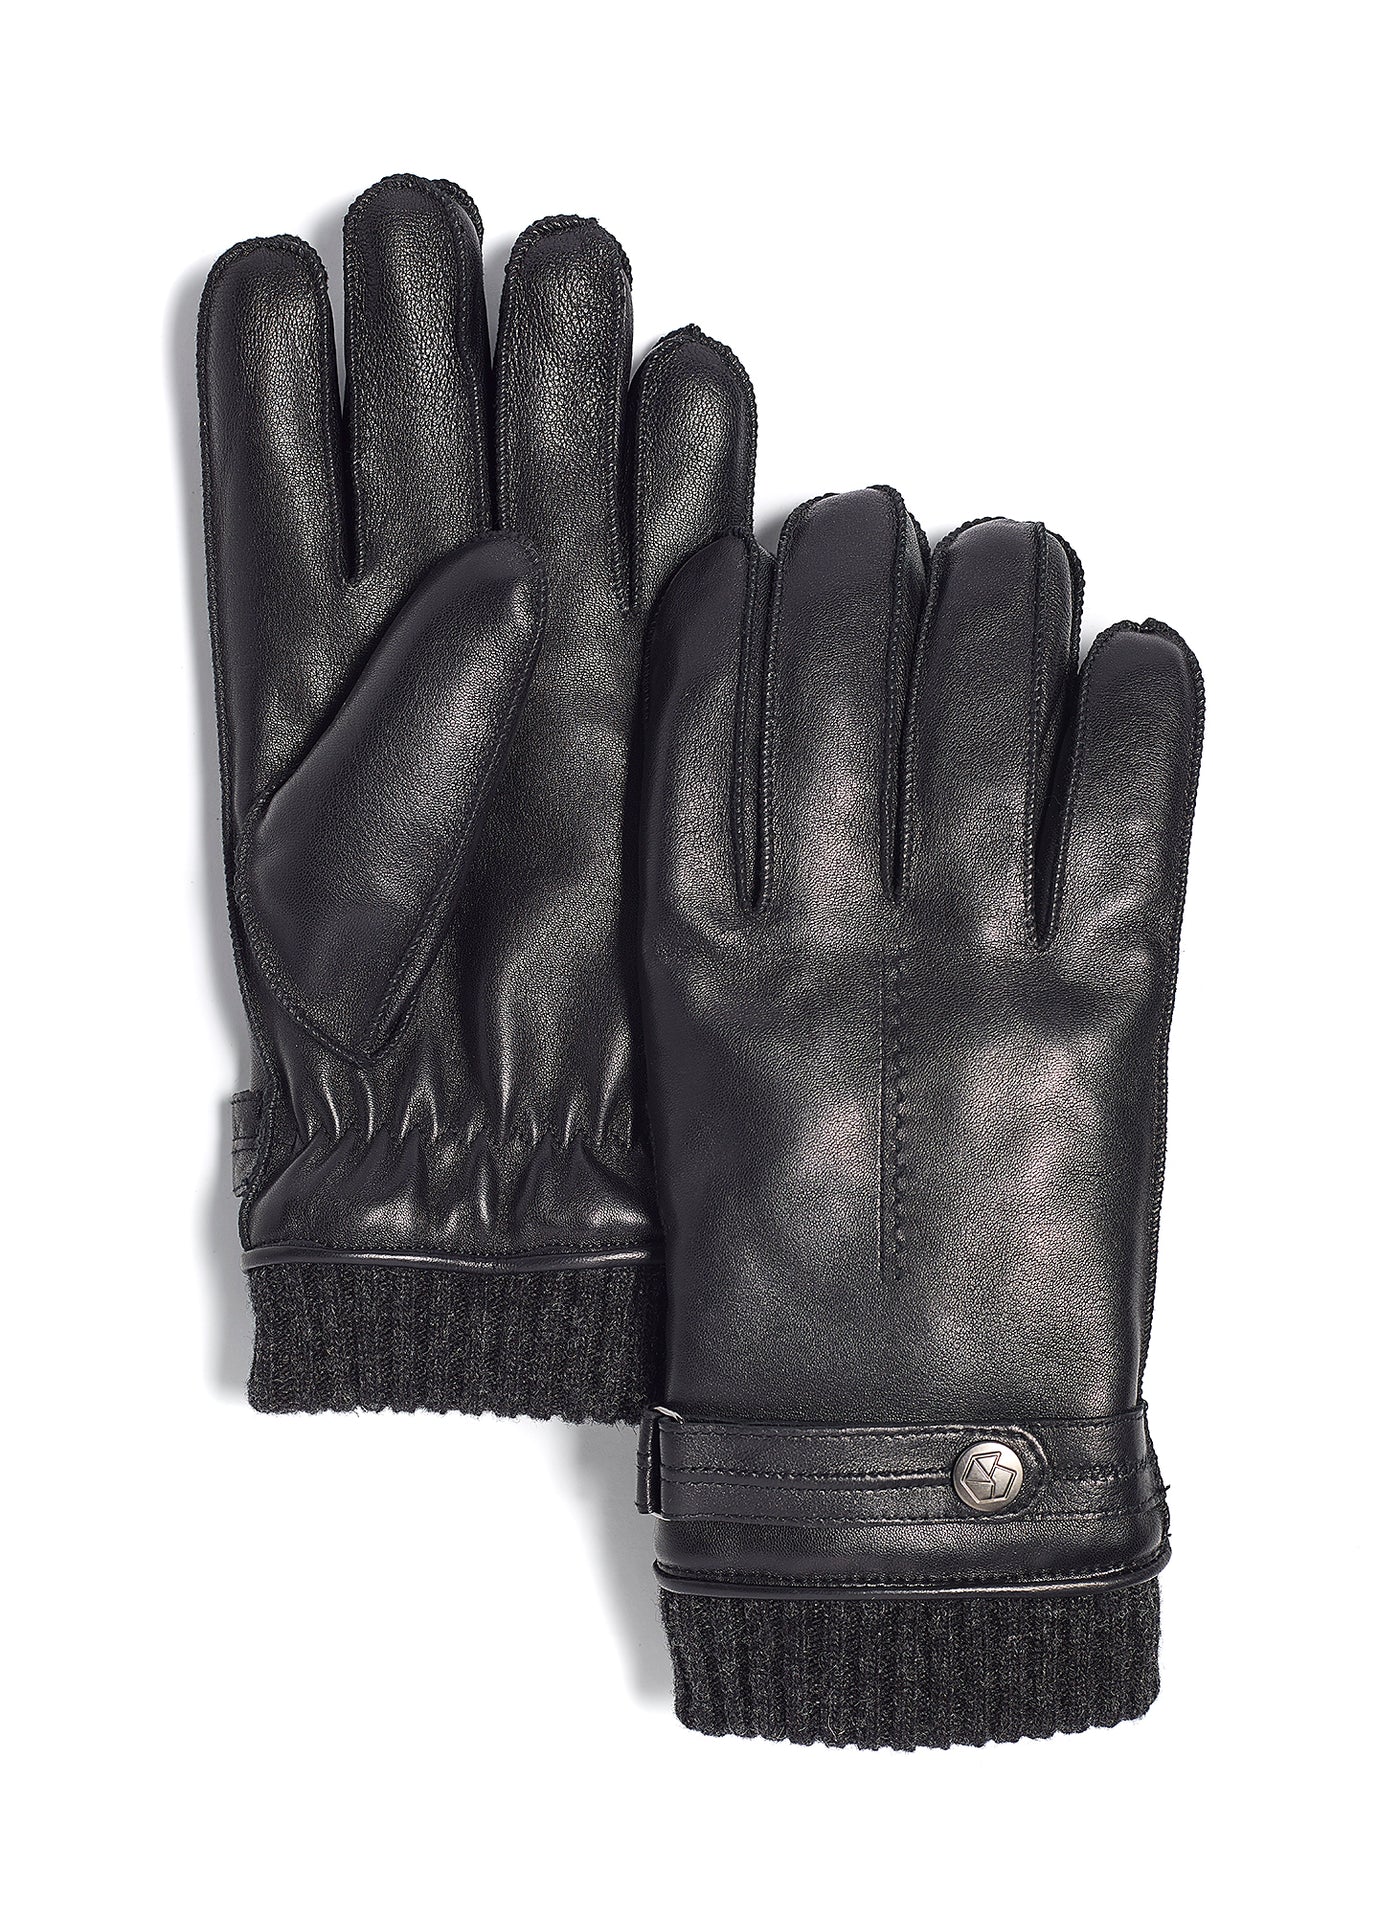 Nelson Glove